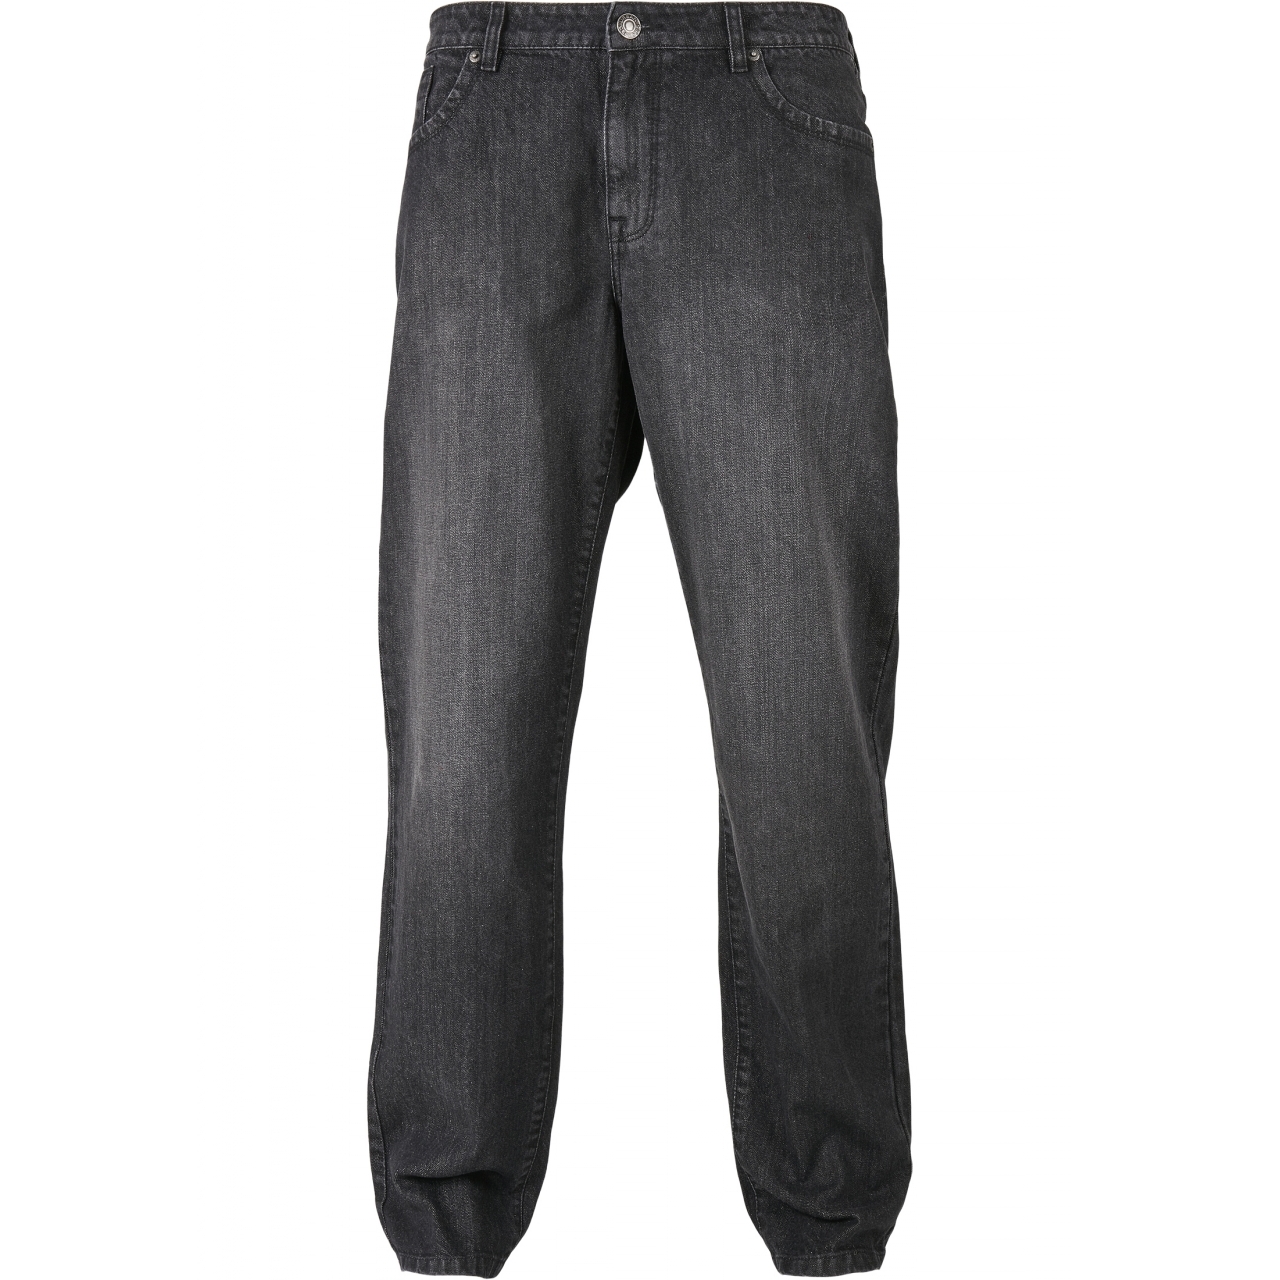 Džíny Urban Classics Loose Fit Jeans - černé, 36/32